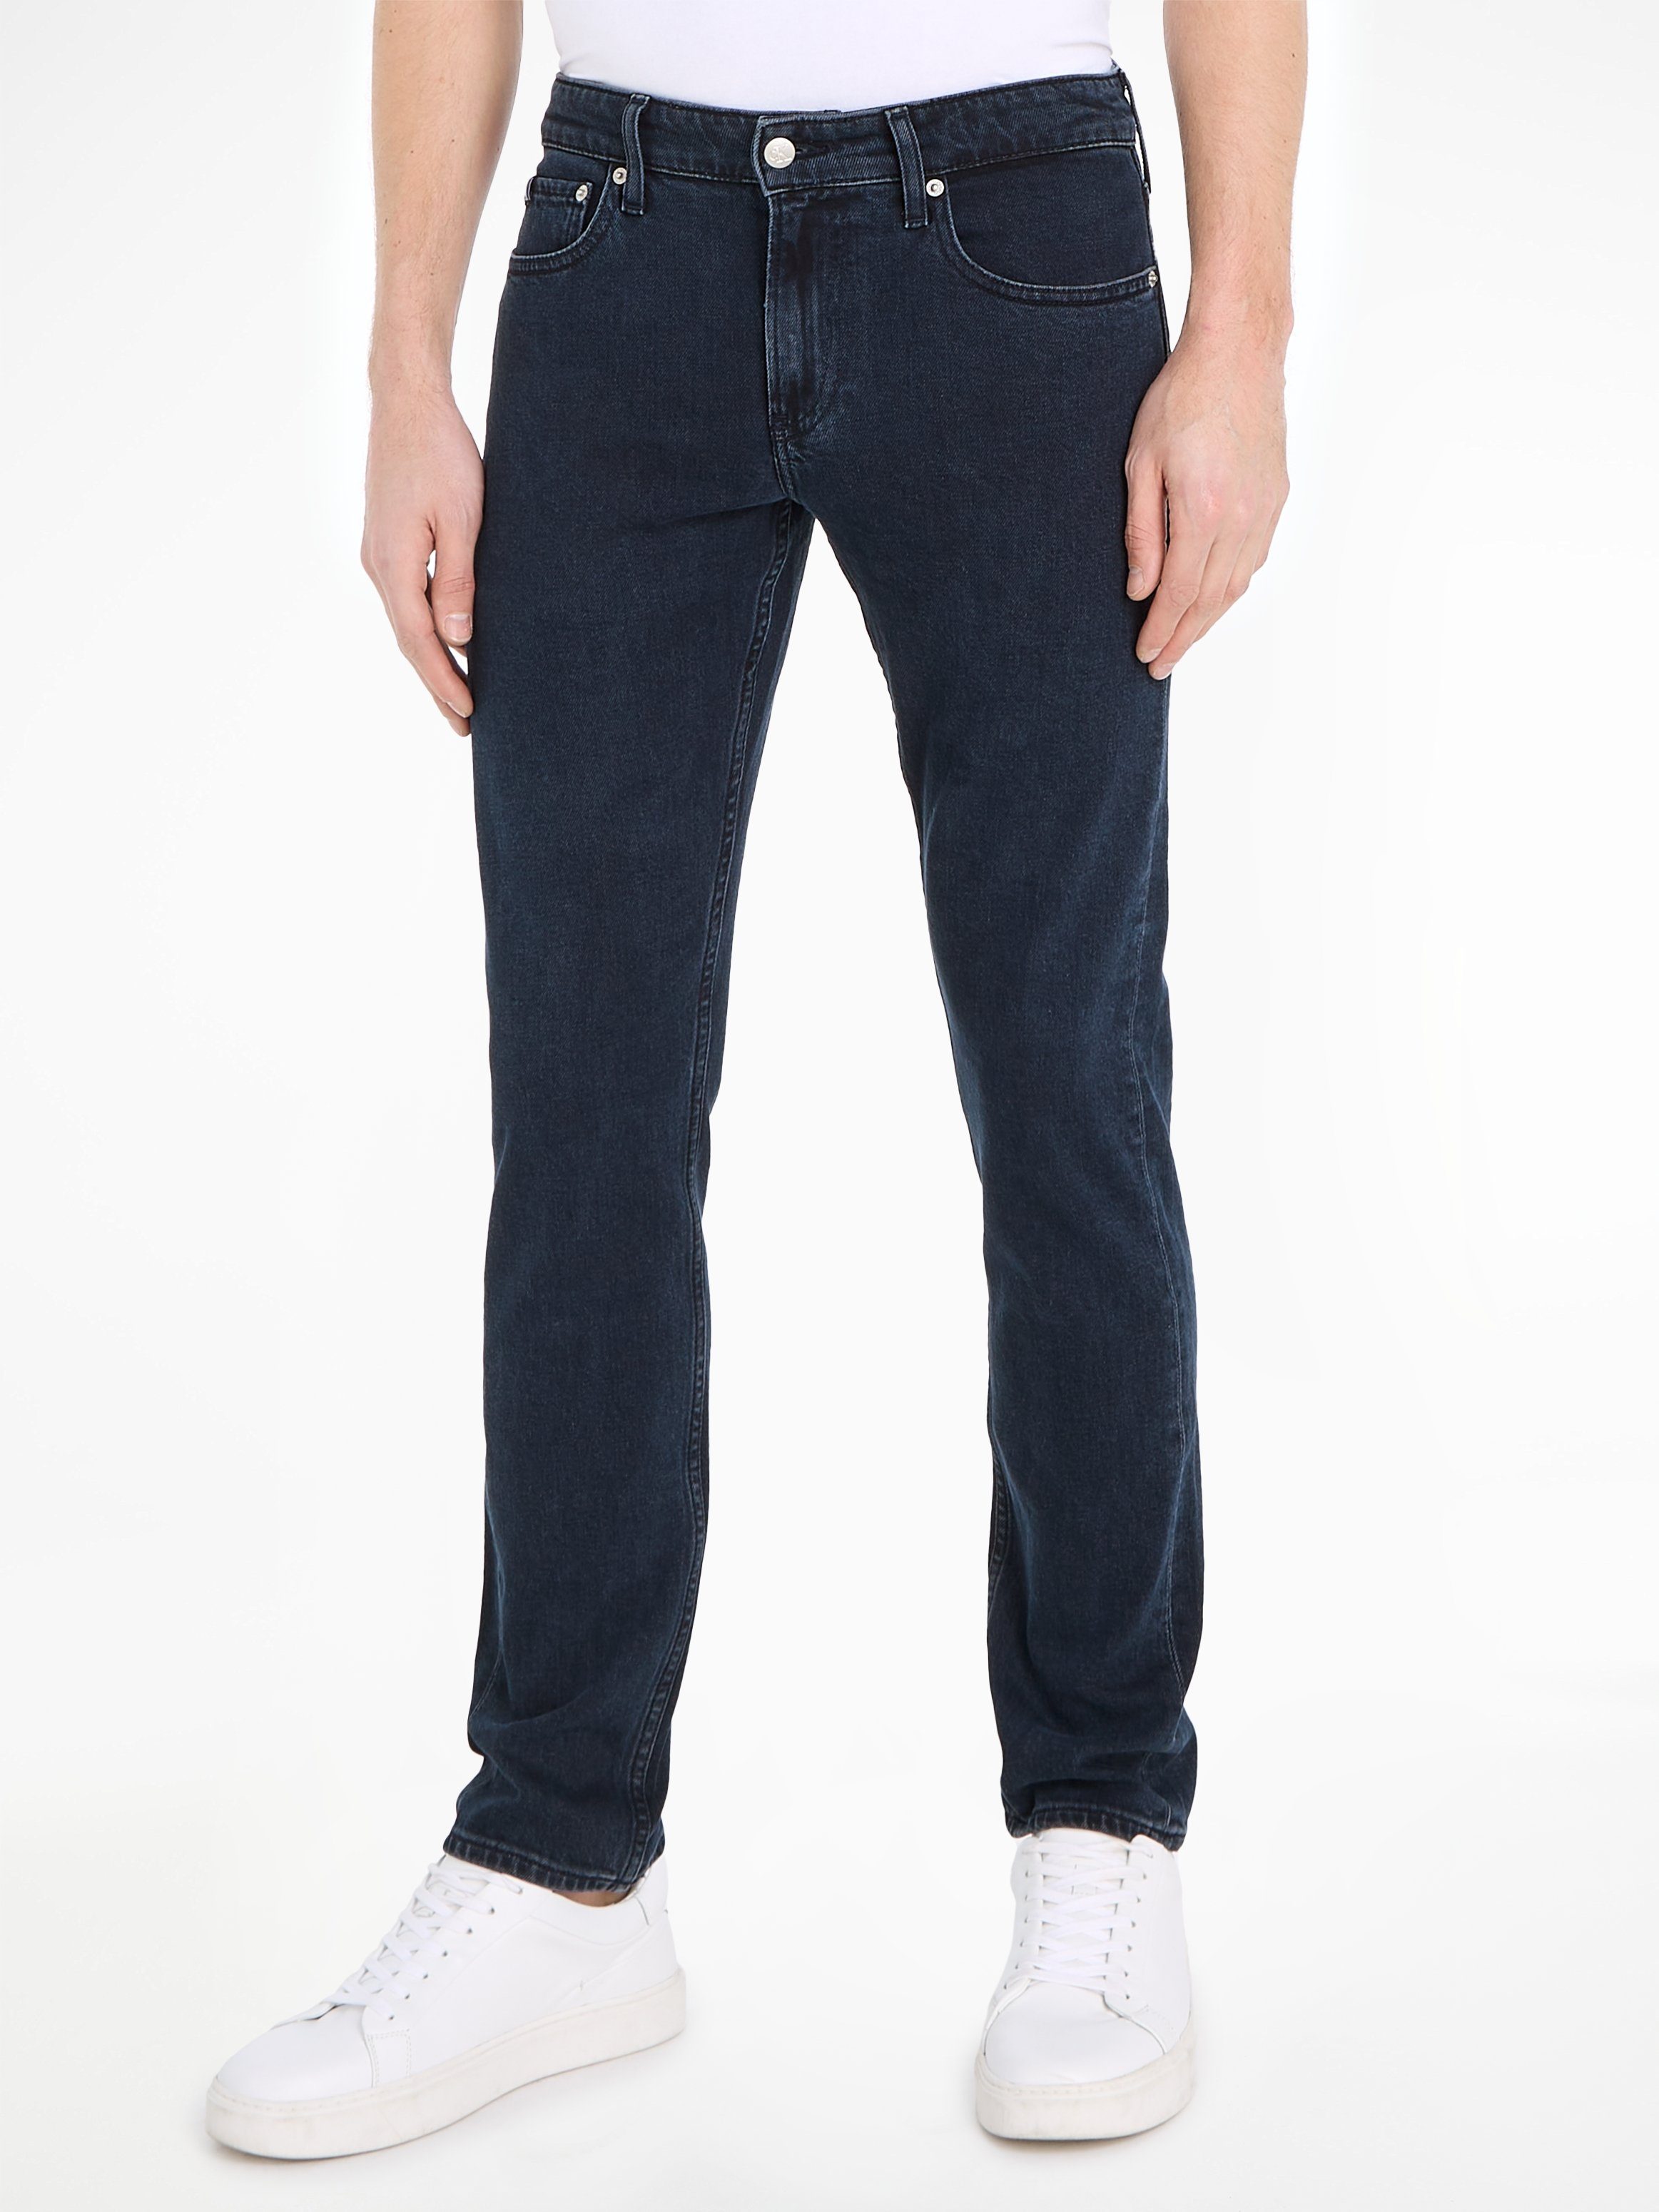 Calvin Klein Slim fit jeans SLIM met kleingeldzakje